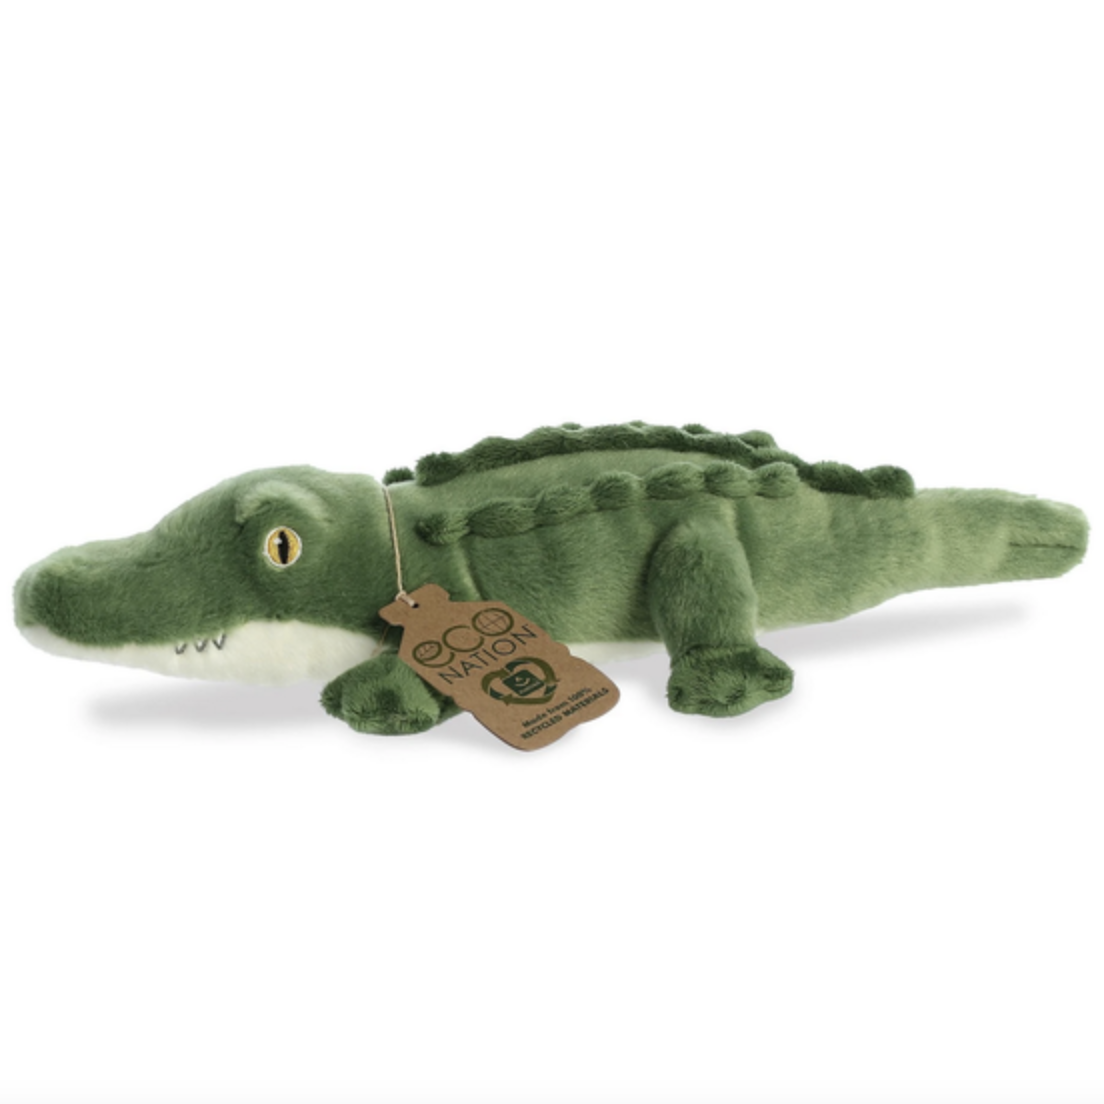 Alligator - Super Soft Plush Trolley & Purse - CoTa Global